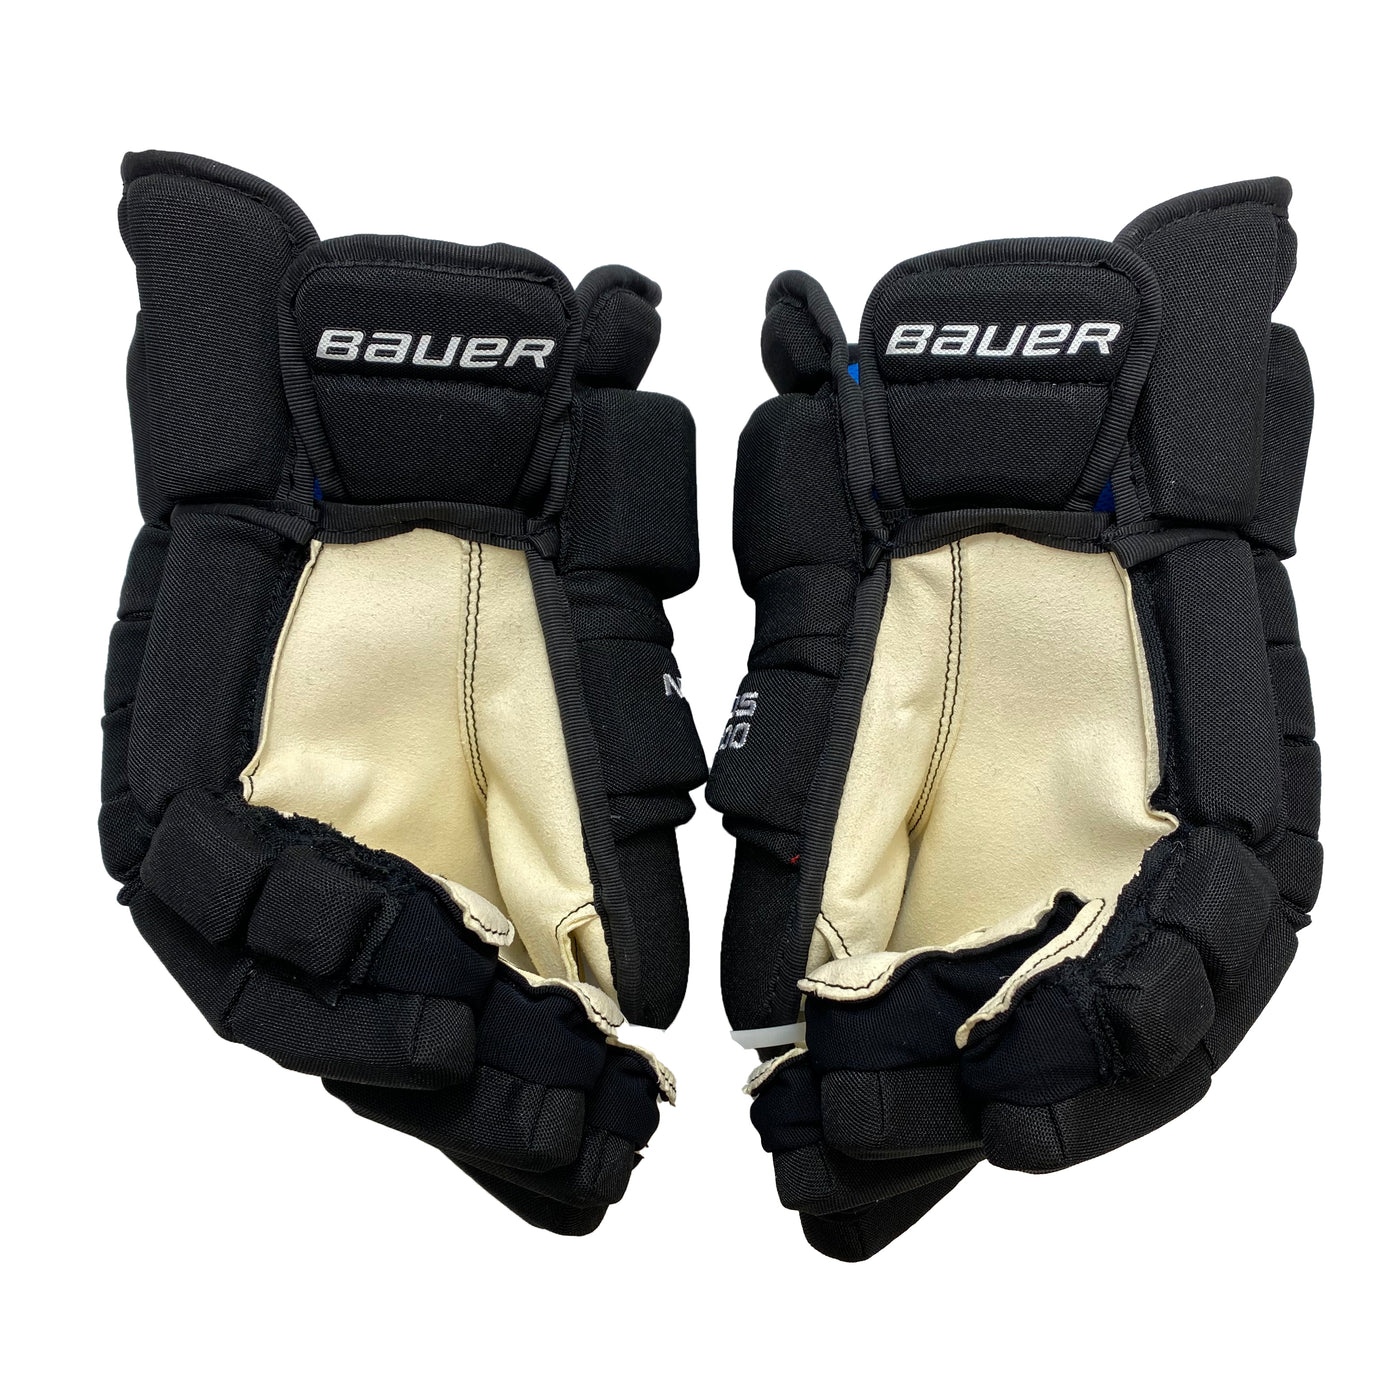 Bauer Nexus 1000 - Dallas Stars - Pro Stock Hockey Gloves - Team Issue